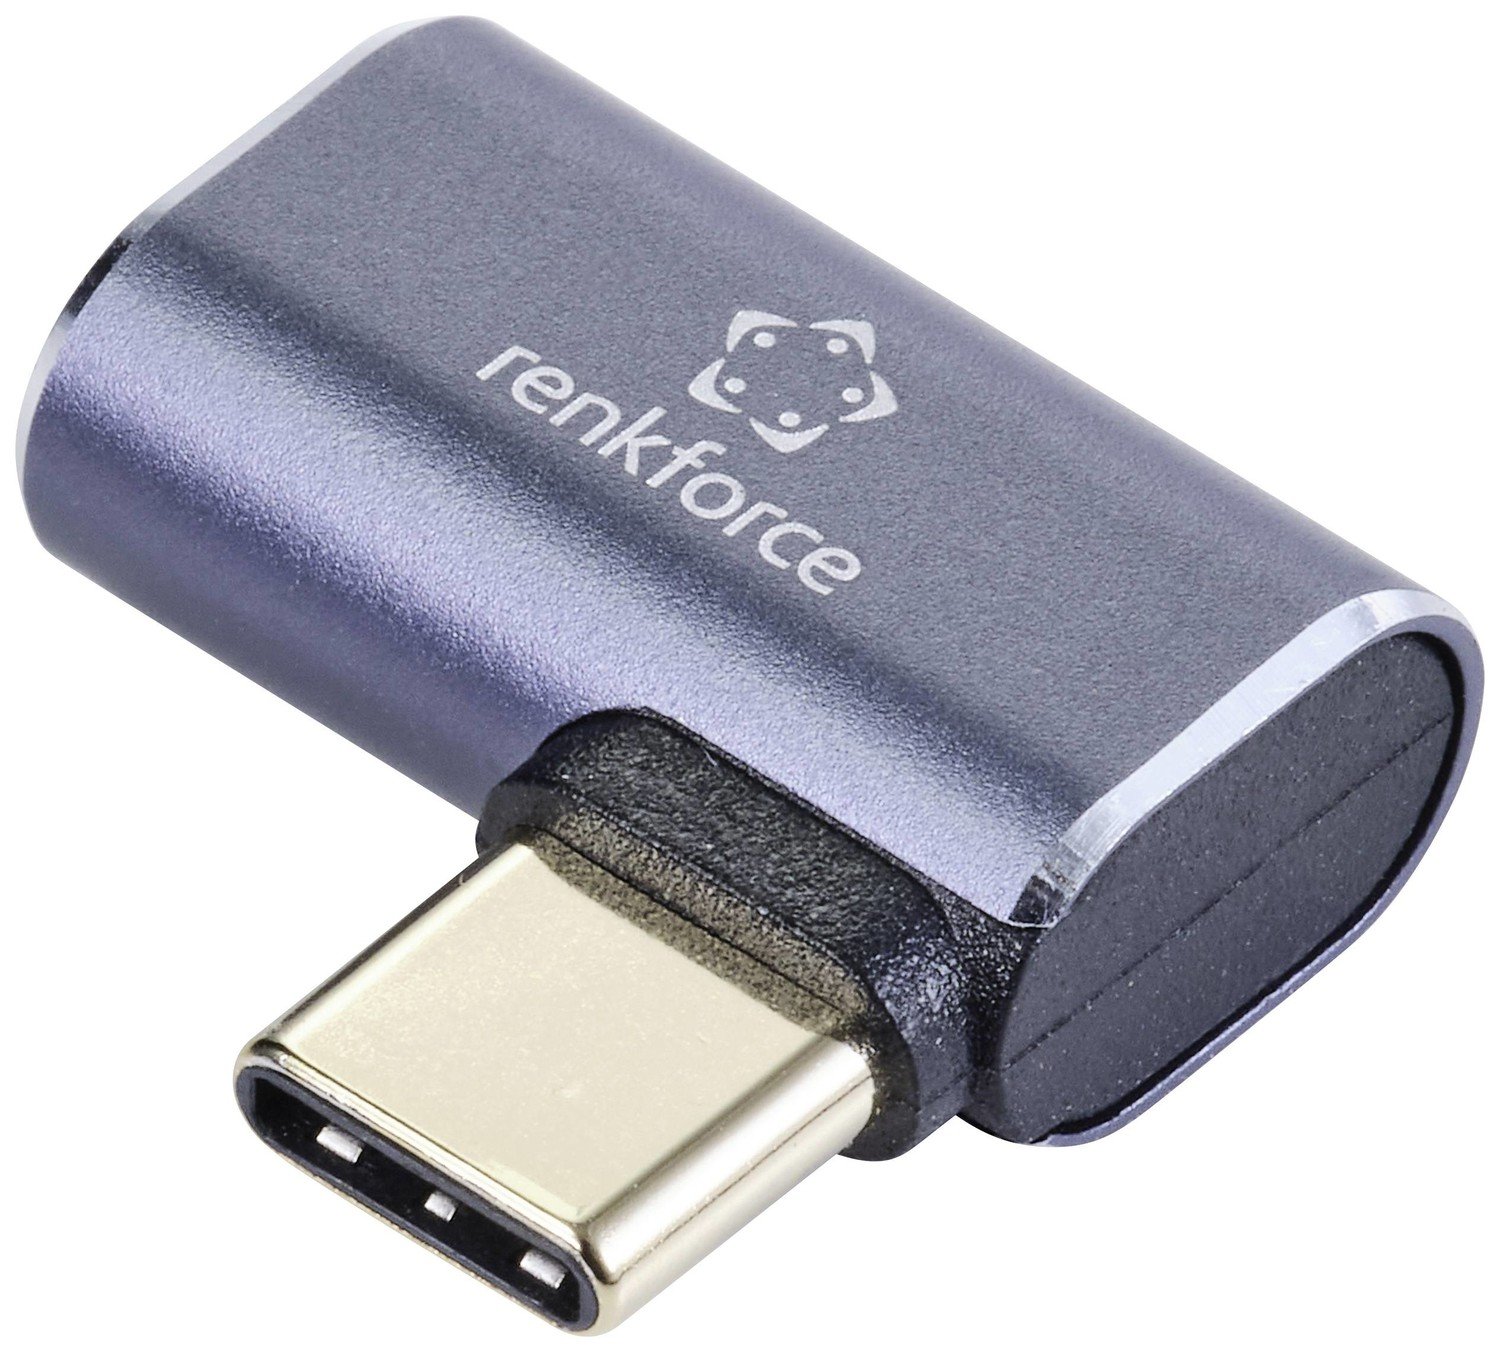 Renkforce USB3® adaptér [1x Konektor USB4® - 1x USB-C® zásuvka] 90° zatočeno doleva, hliníková zástrčka